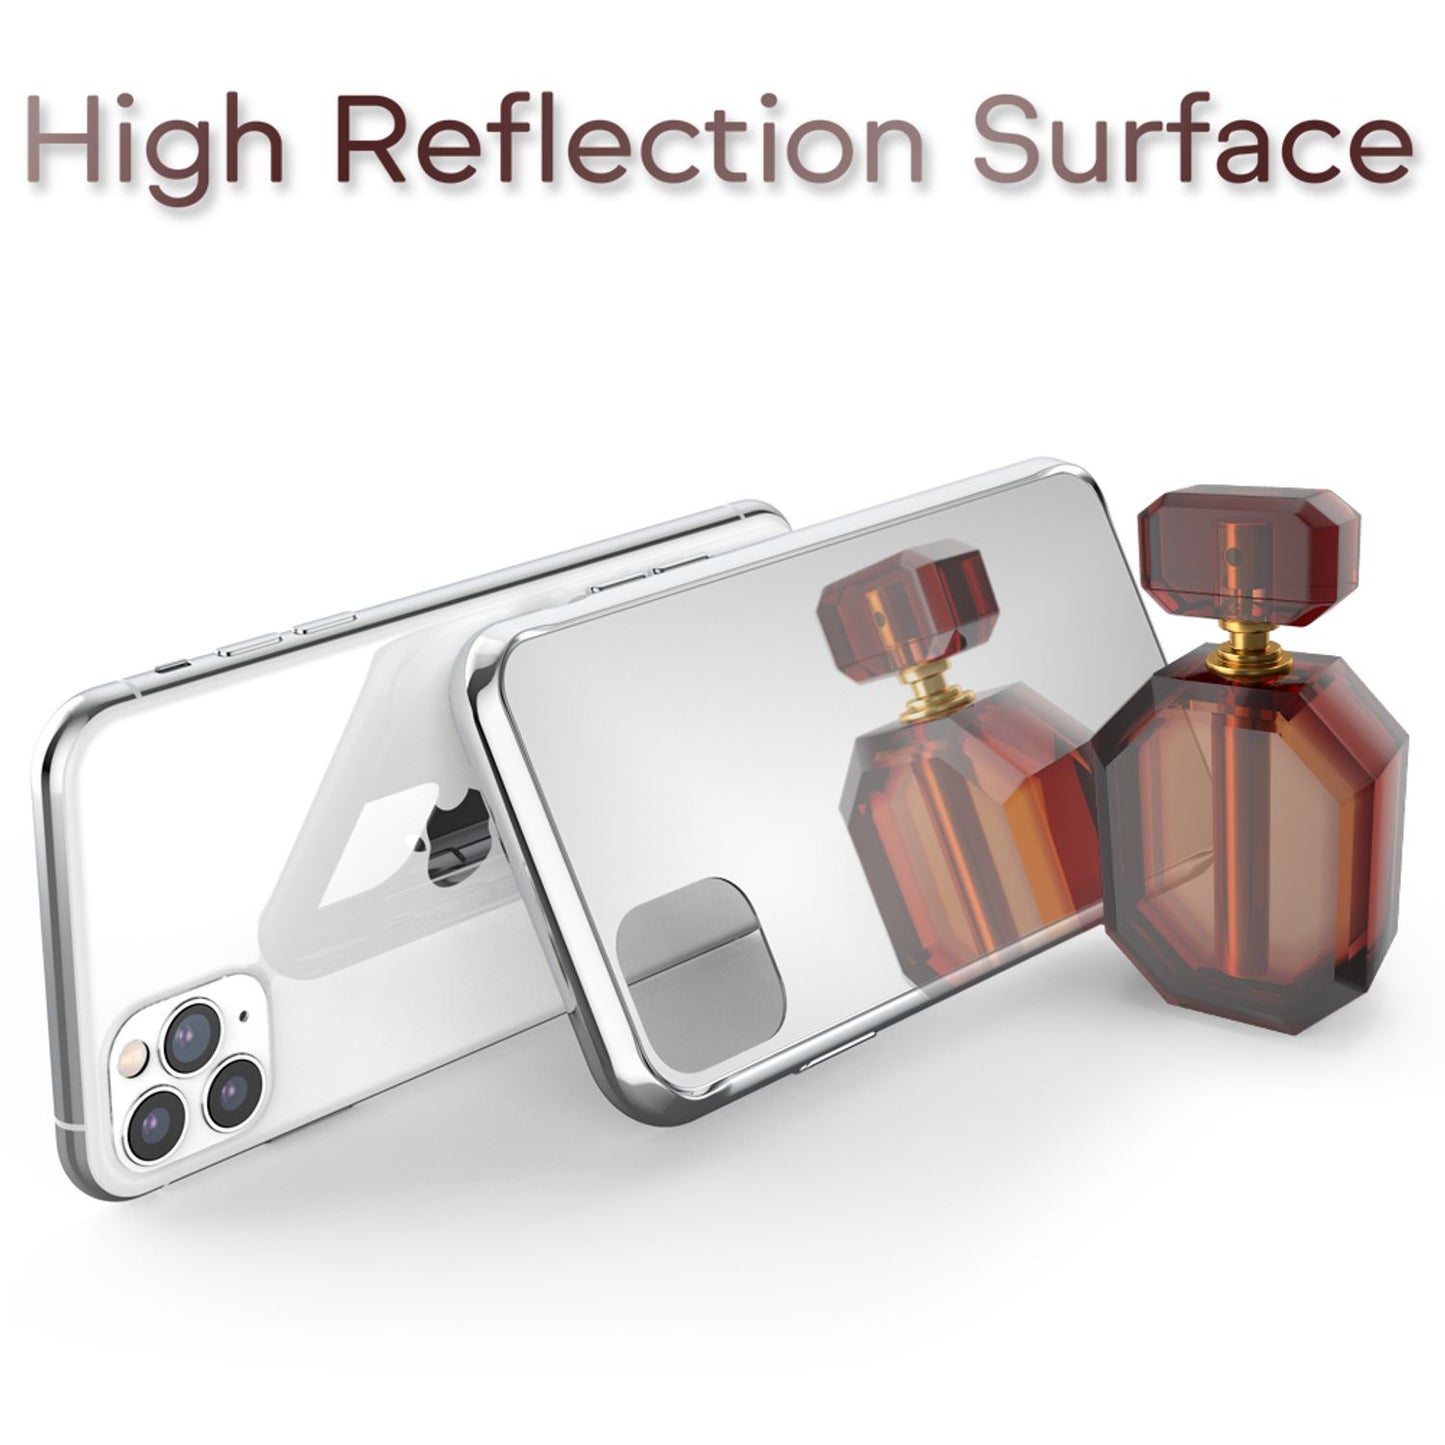 NALIA Spiegel Hart Glas Hülle für iPhone 11 Pro, Mirror Case 9H Tempered Cover